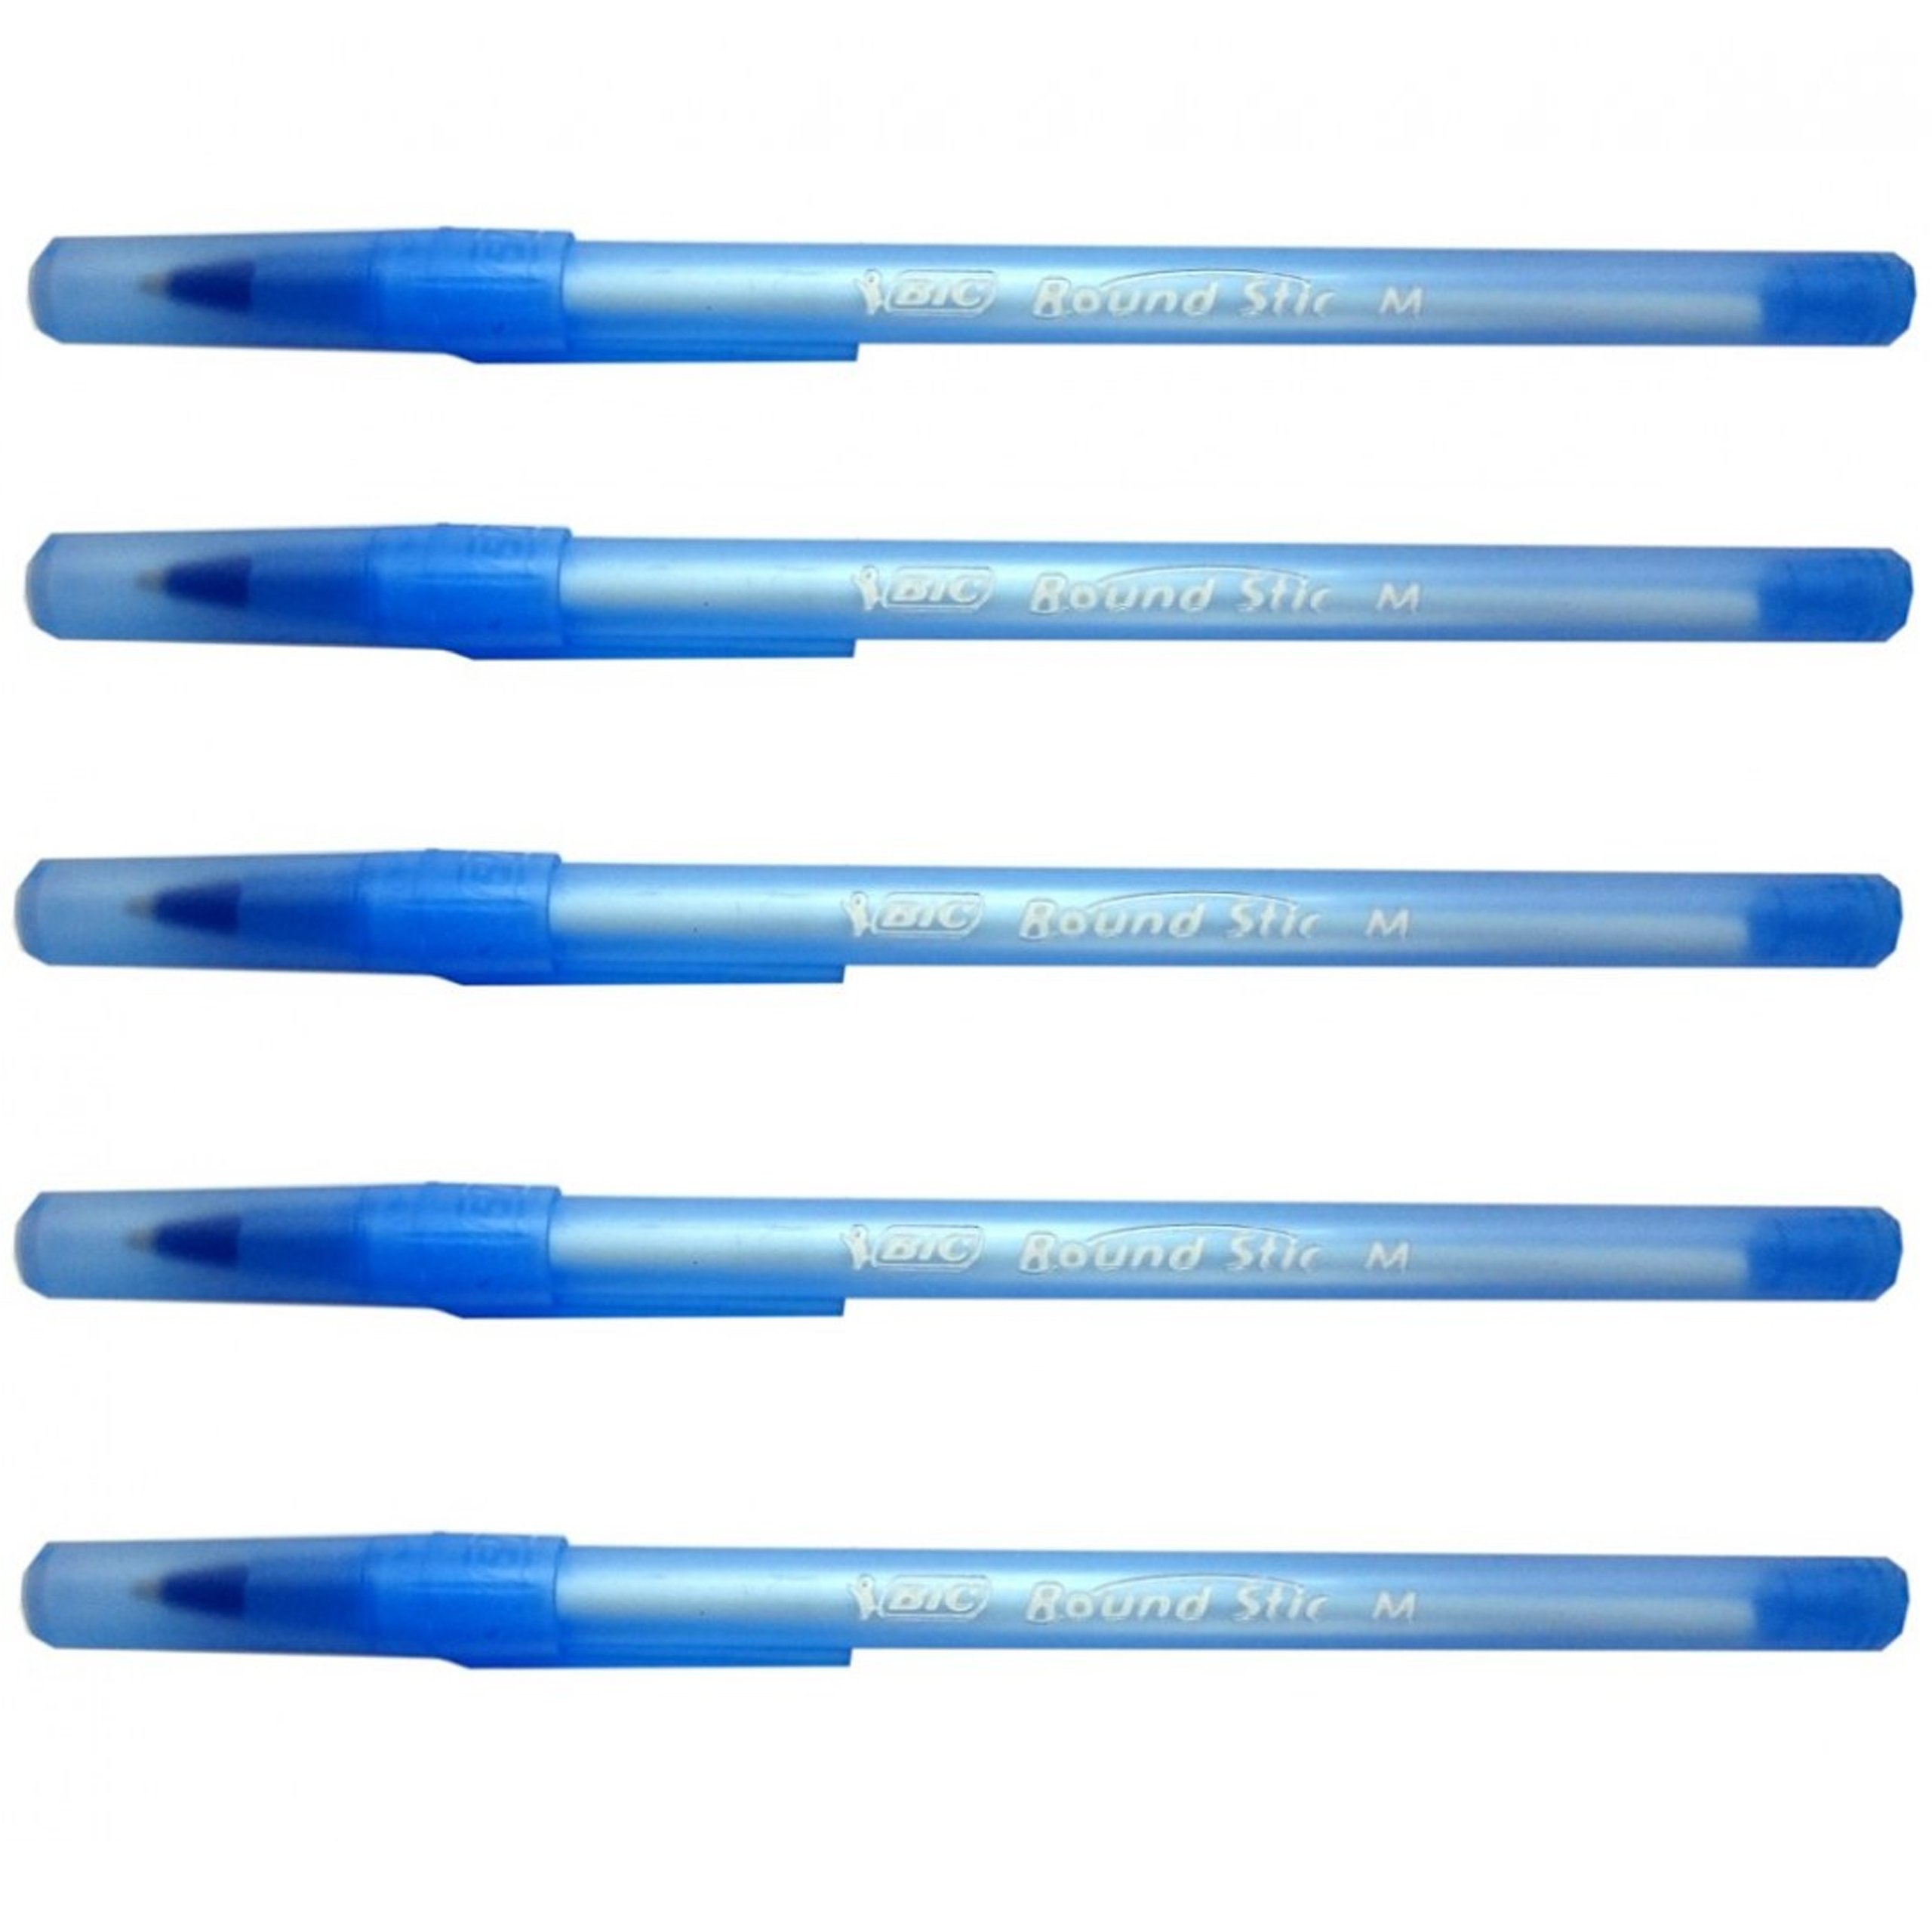 Ручка стик. Ручки BIC Round Stic m. Round Stick ручка BIC. BIC ручка шариковая голубая. Синяя ручка BIC.